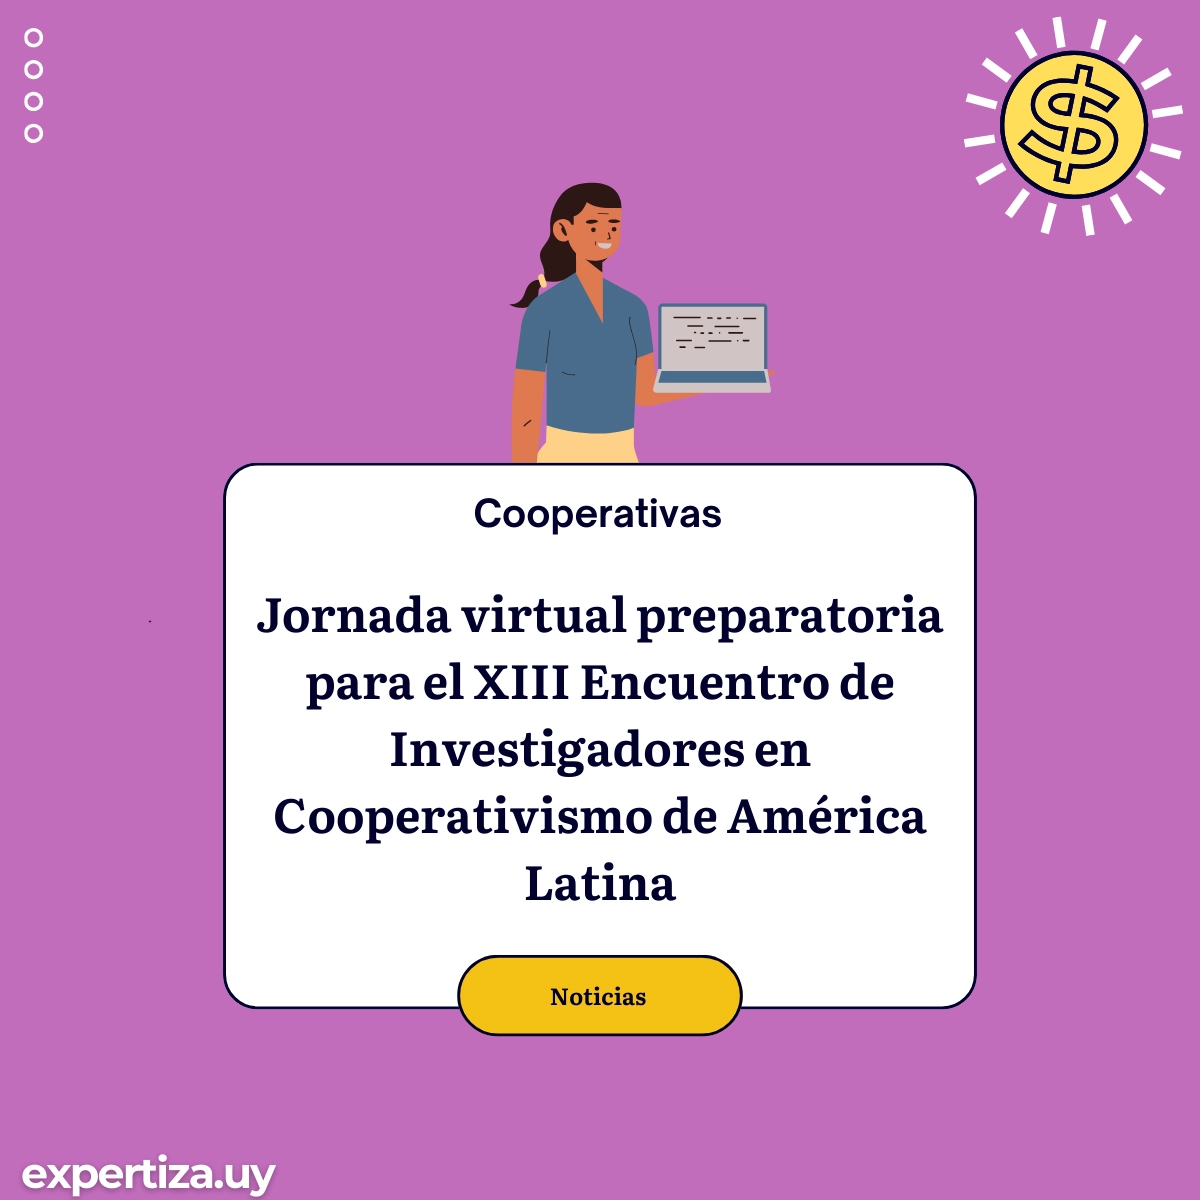 Jornada virtual preparatoria para el XIII Encuentro de Investigadores en Cooperativismo de América Latina.